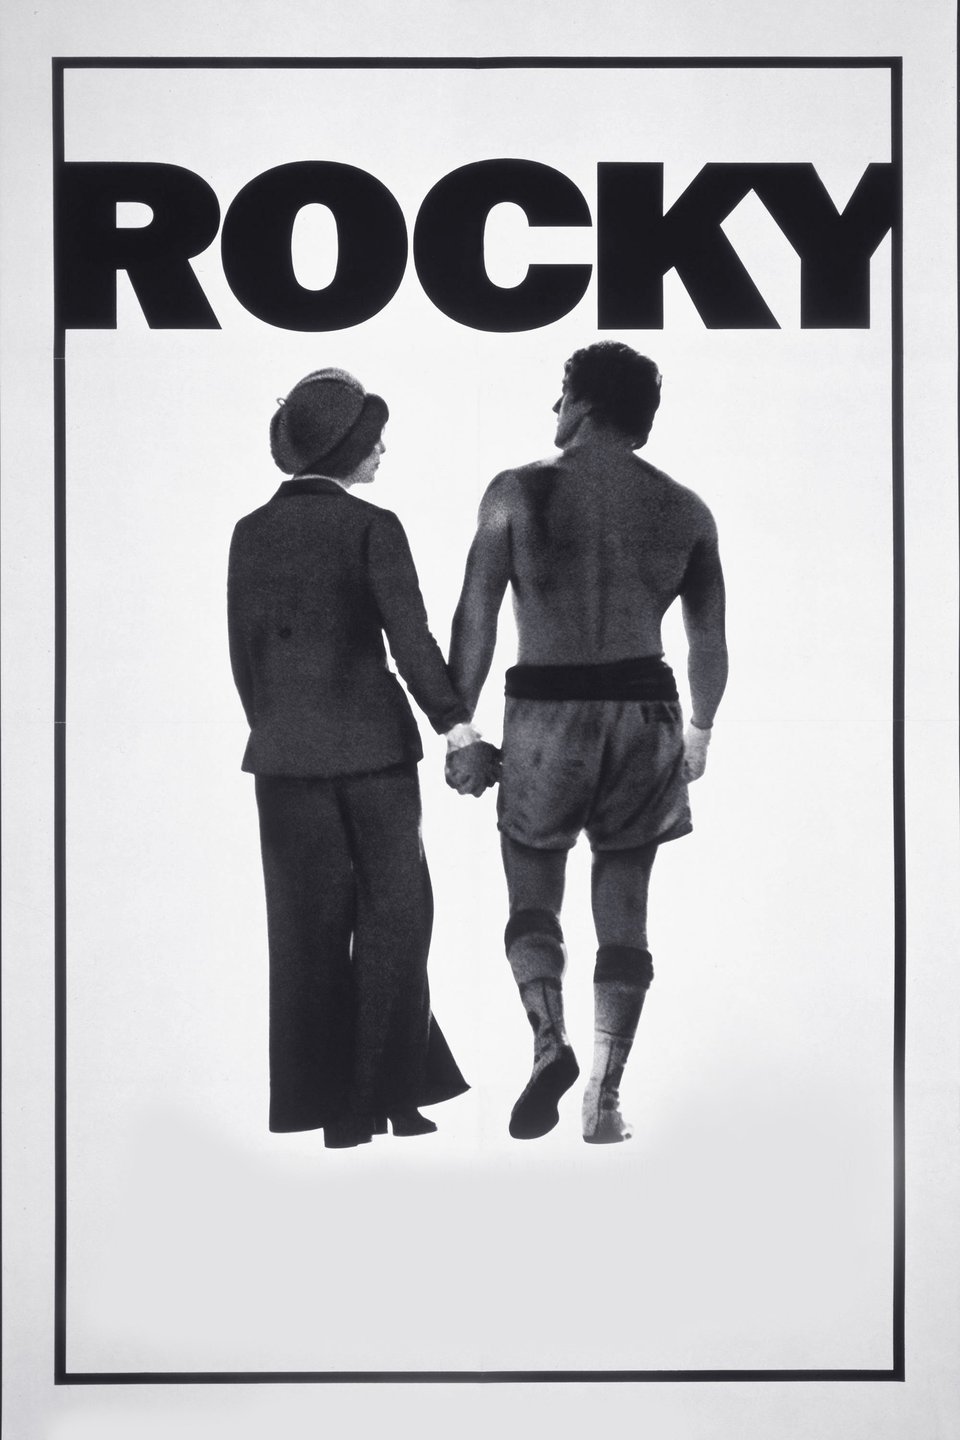 [MINI-HD] Rocky (1976) ร็อคกี้ ภาค 1 [720p] [พากย์ไทย 2.0 + เสียงอังกฤษ 5.1] [บรรยายไทย + อังกฤษ] [เสียงไทย + ซับไทย] [OPENLOAD]